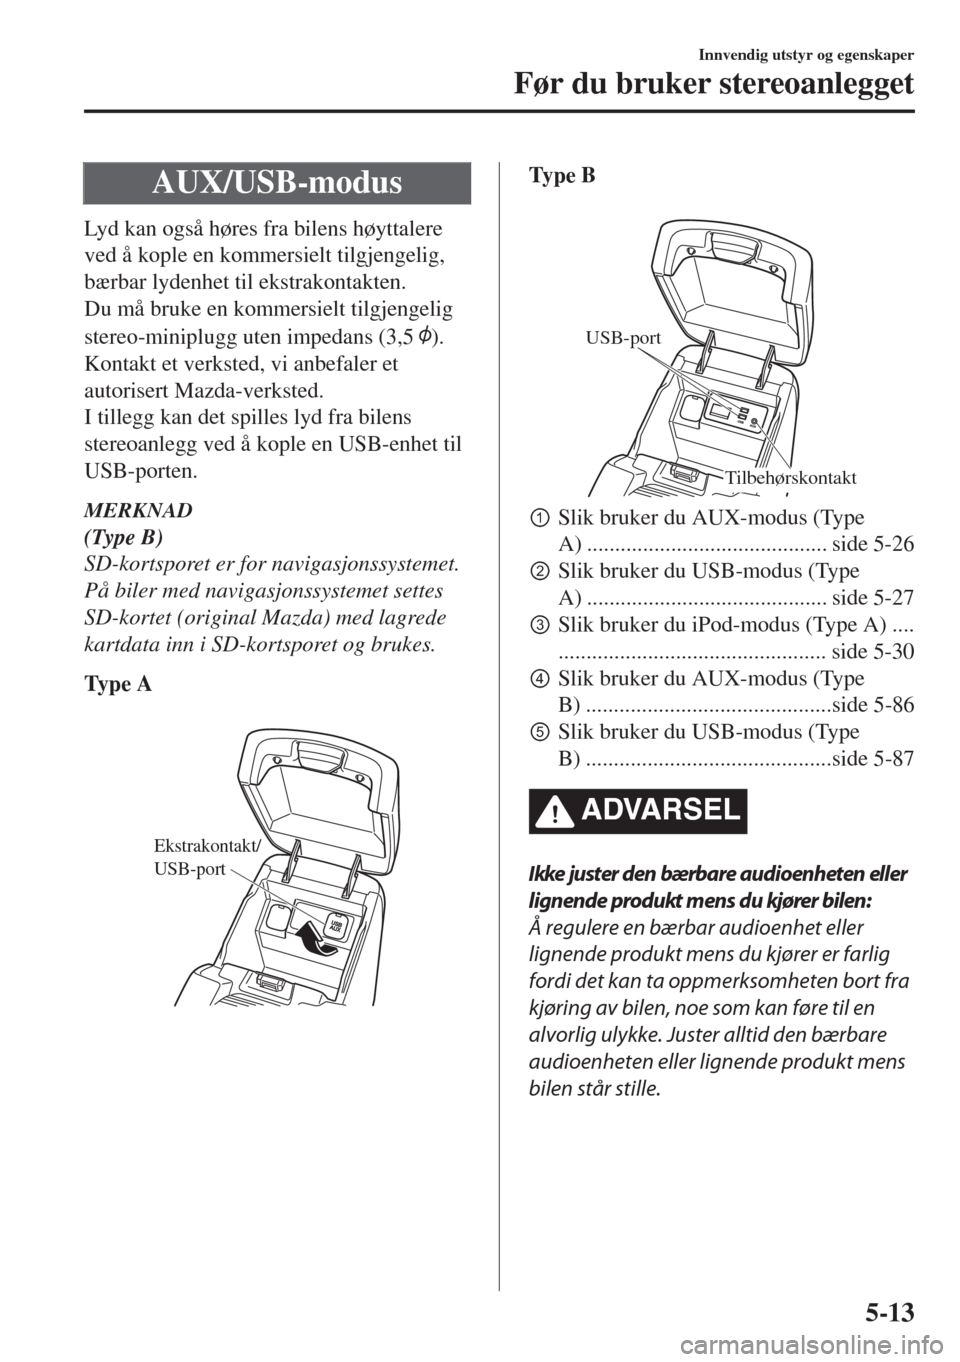 MAZDA MODEL 6 2018  Brukerhåndbok (in Norwegian) AUX/USB-modus
Lyd kan også høres fra bilens høyttalere
ved å kople en kommersielt tilgjengelig,
bærbar lydenhet til ekstrakontakten.
Du må bruke en kommersielt tilgjengelig
stereo-miniplugg uten